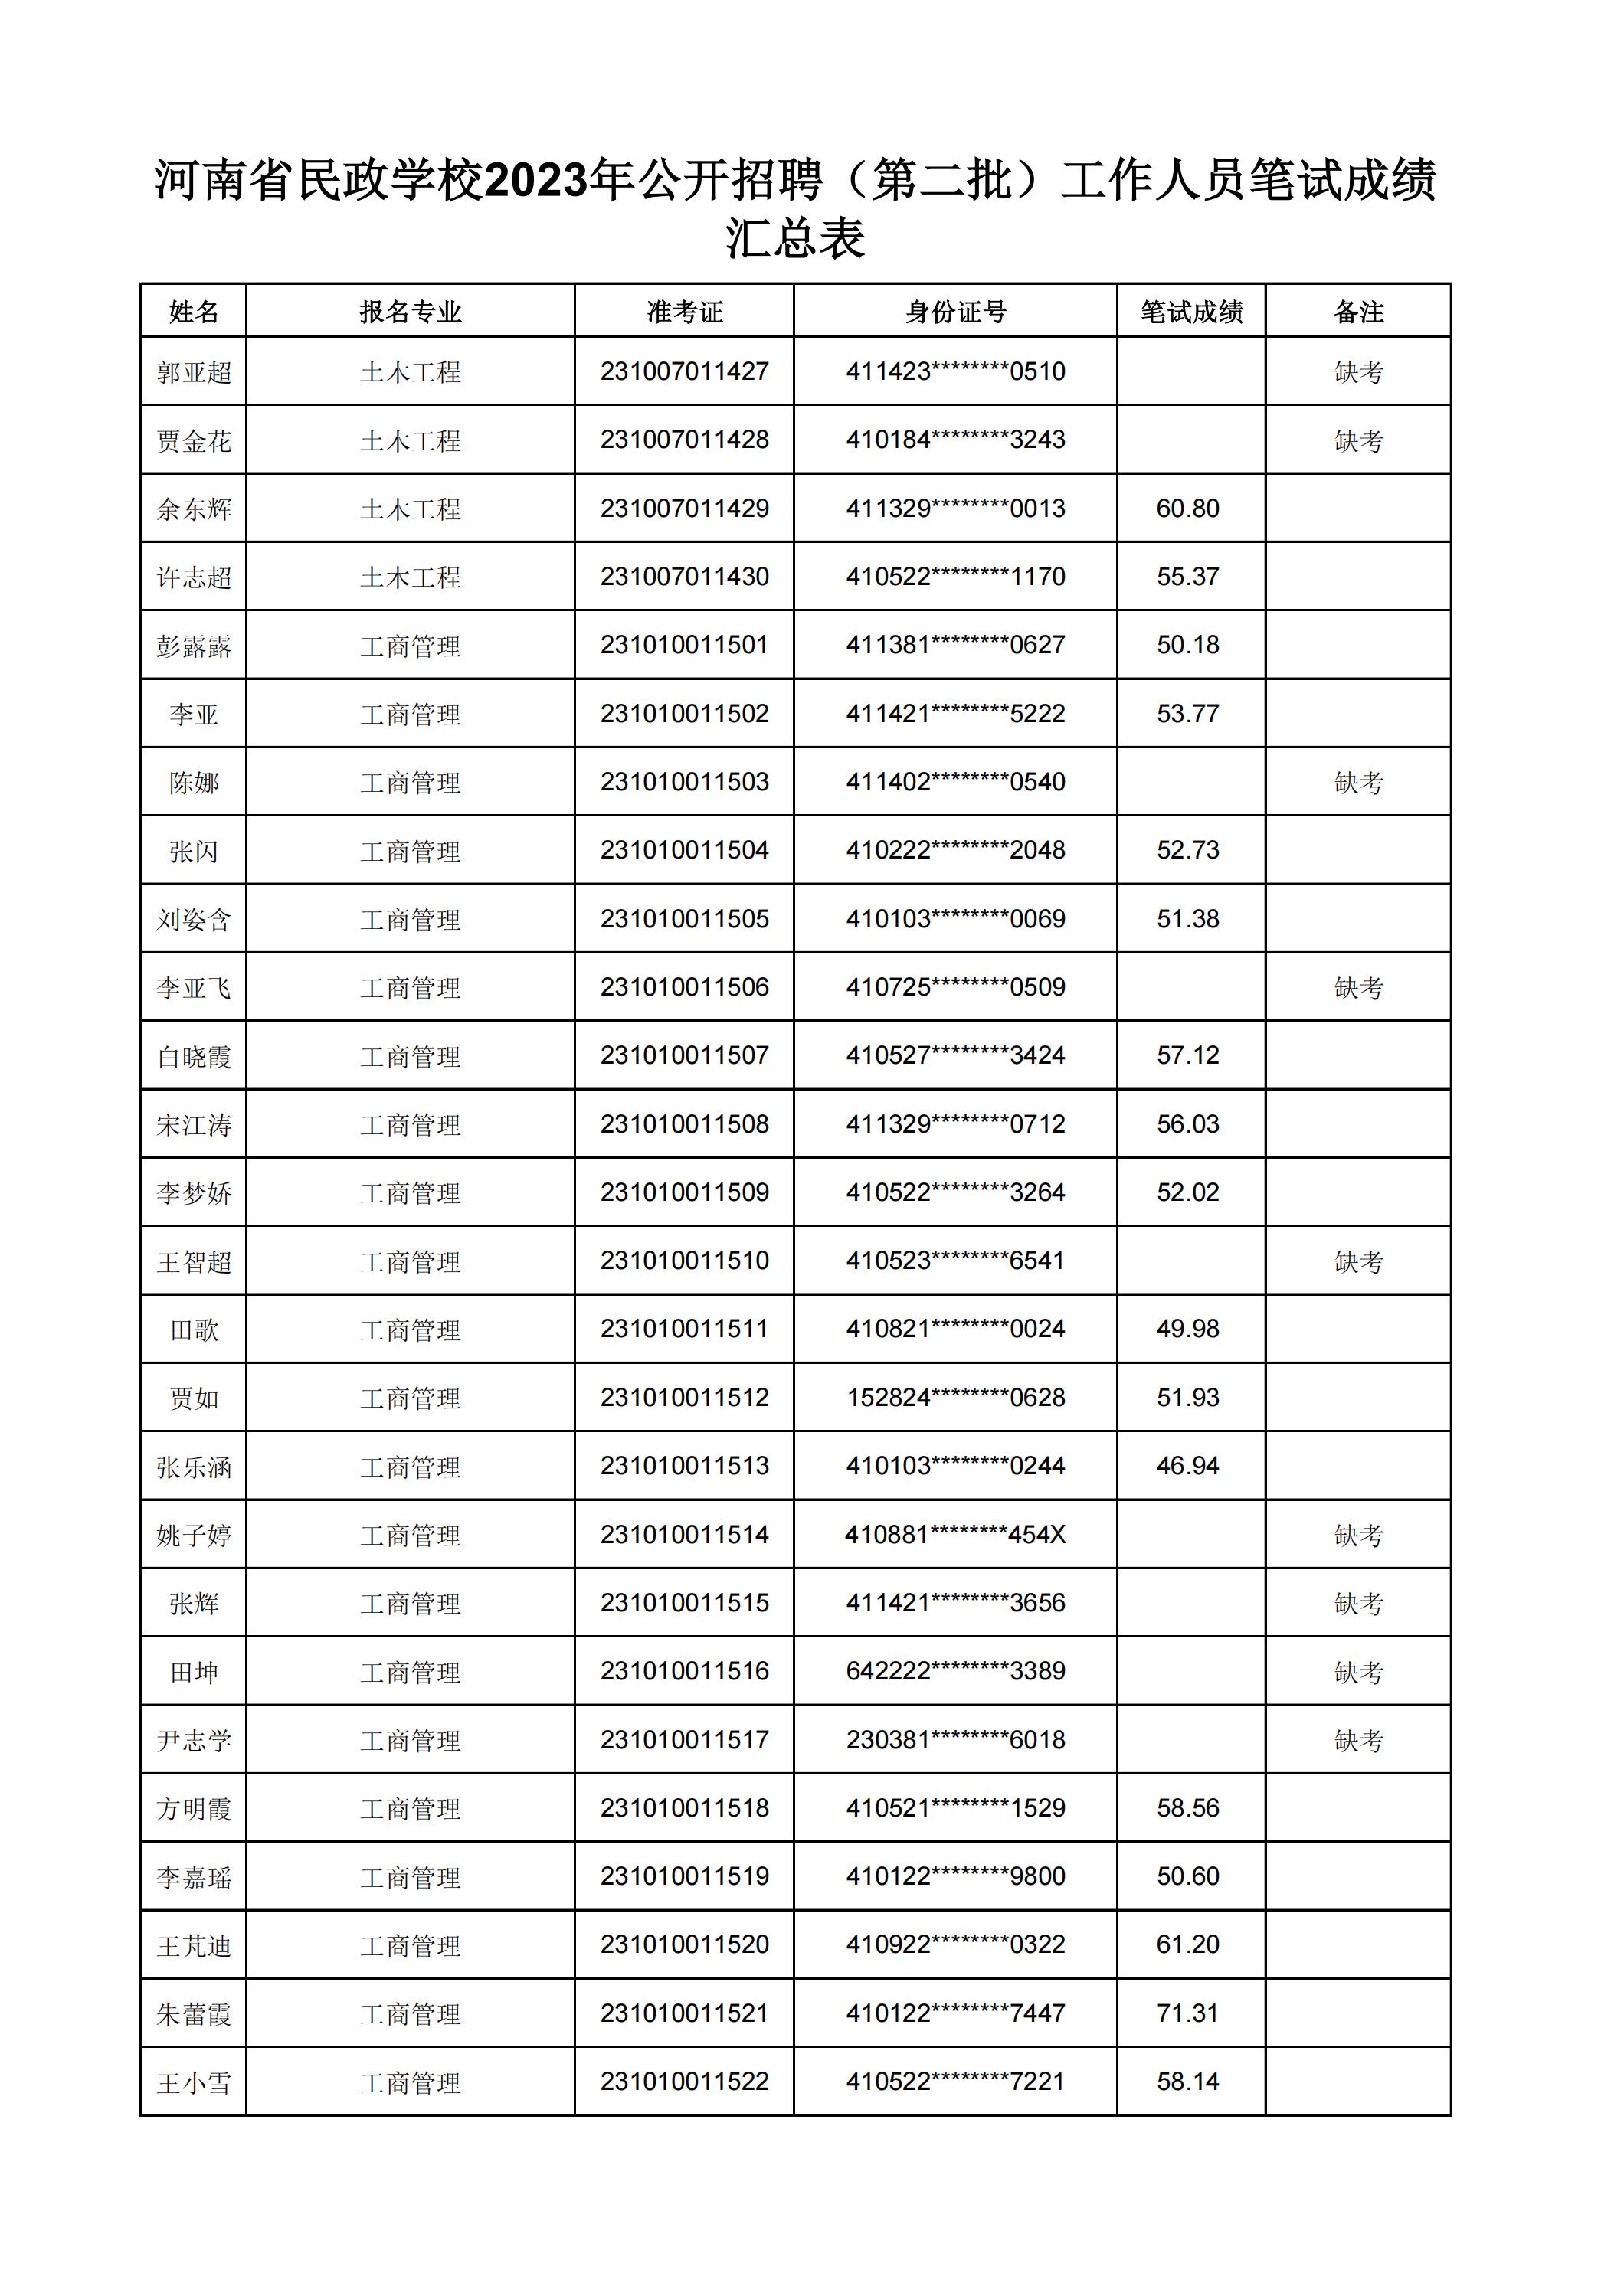 河南省民政学校2023年公开招聘（第二批）工作人员笔试成绩汇总表(2)_16.jpg